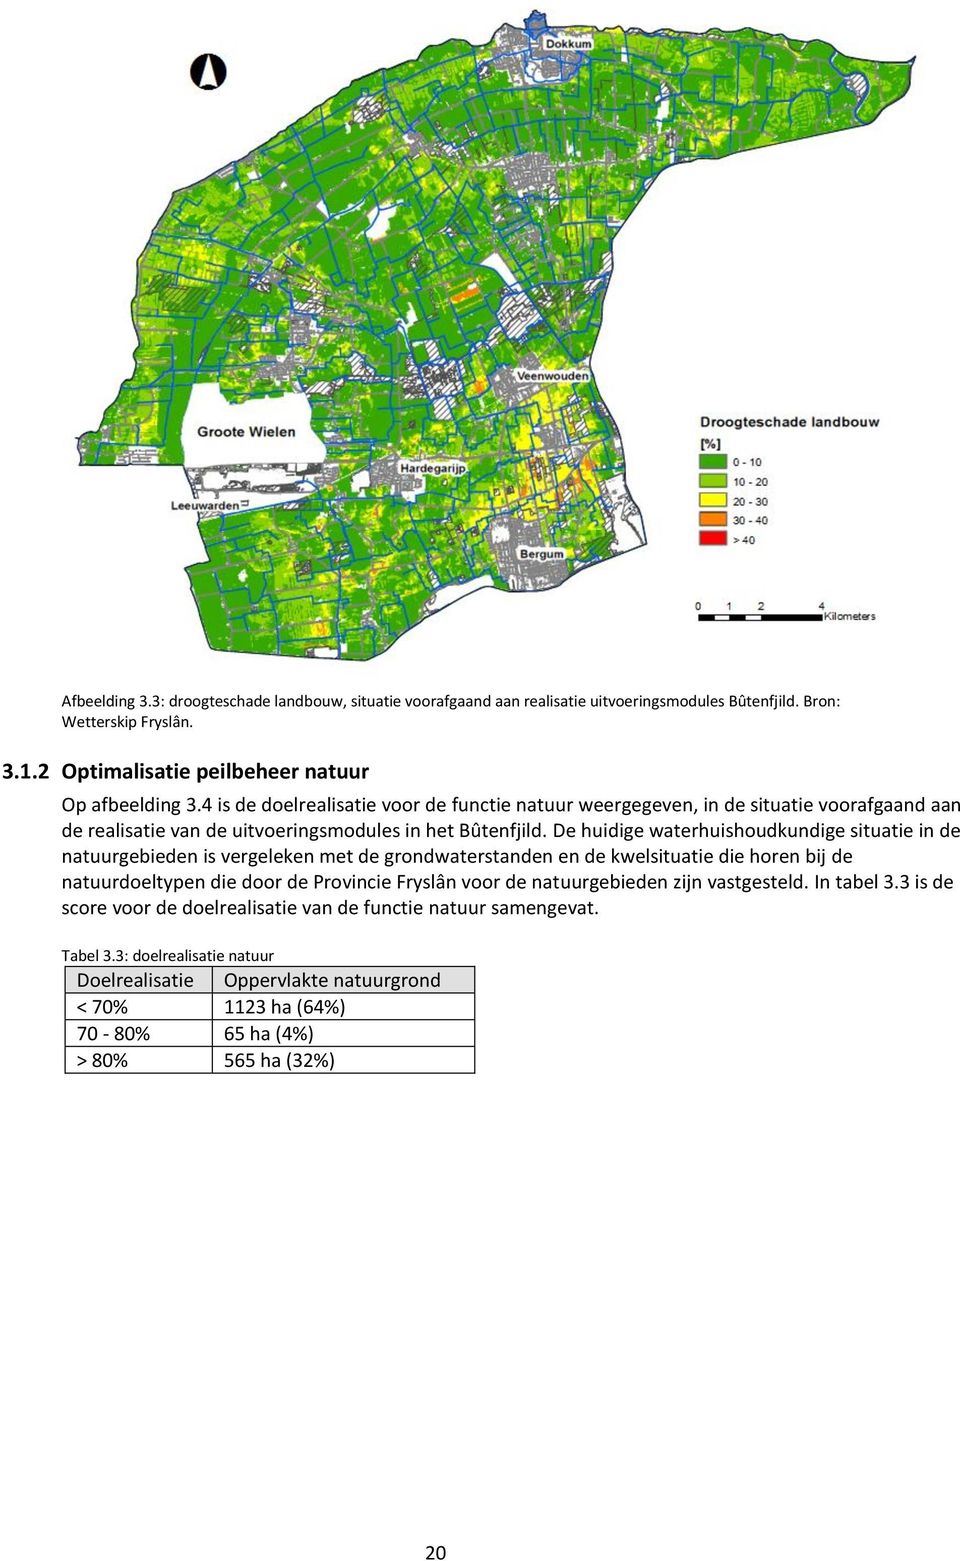 De huidige waterhuishoudkundige situatie in de natuurgebieden is vergeleken met de grondwaterstanden en de kwelsituatie die horen bij de natuurdoeltypen die door de Provincie Fryslân voor de